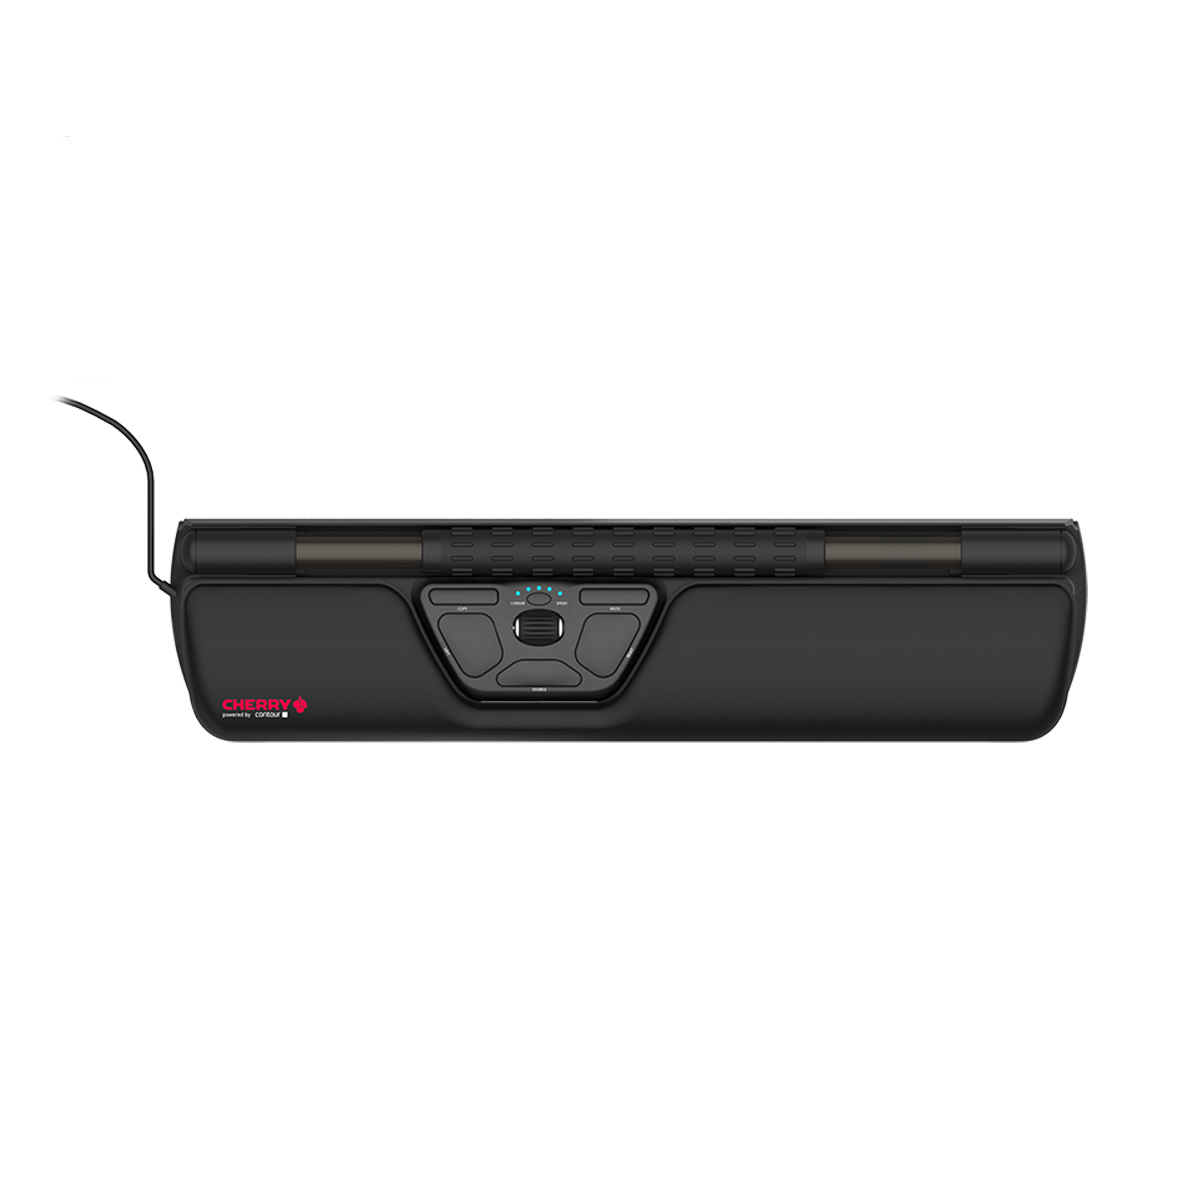 Cherry Maus ergonomische Rollermaus  (JM-R0100) USB, schwarz